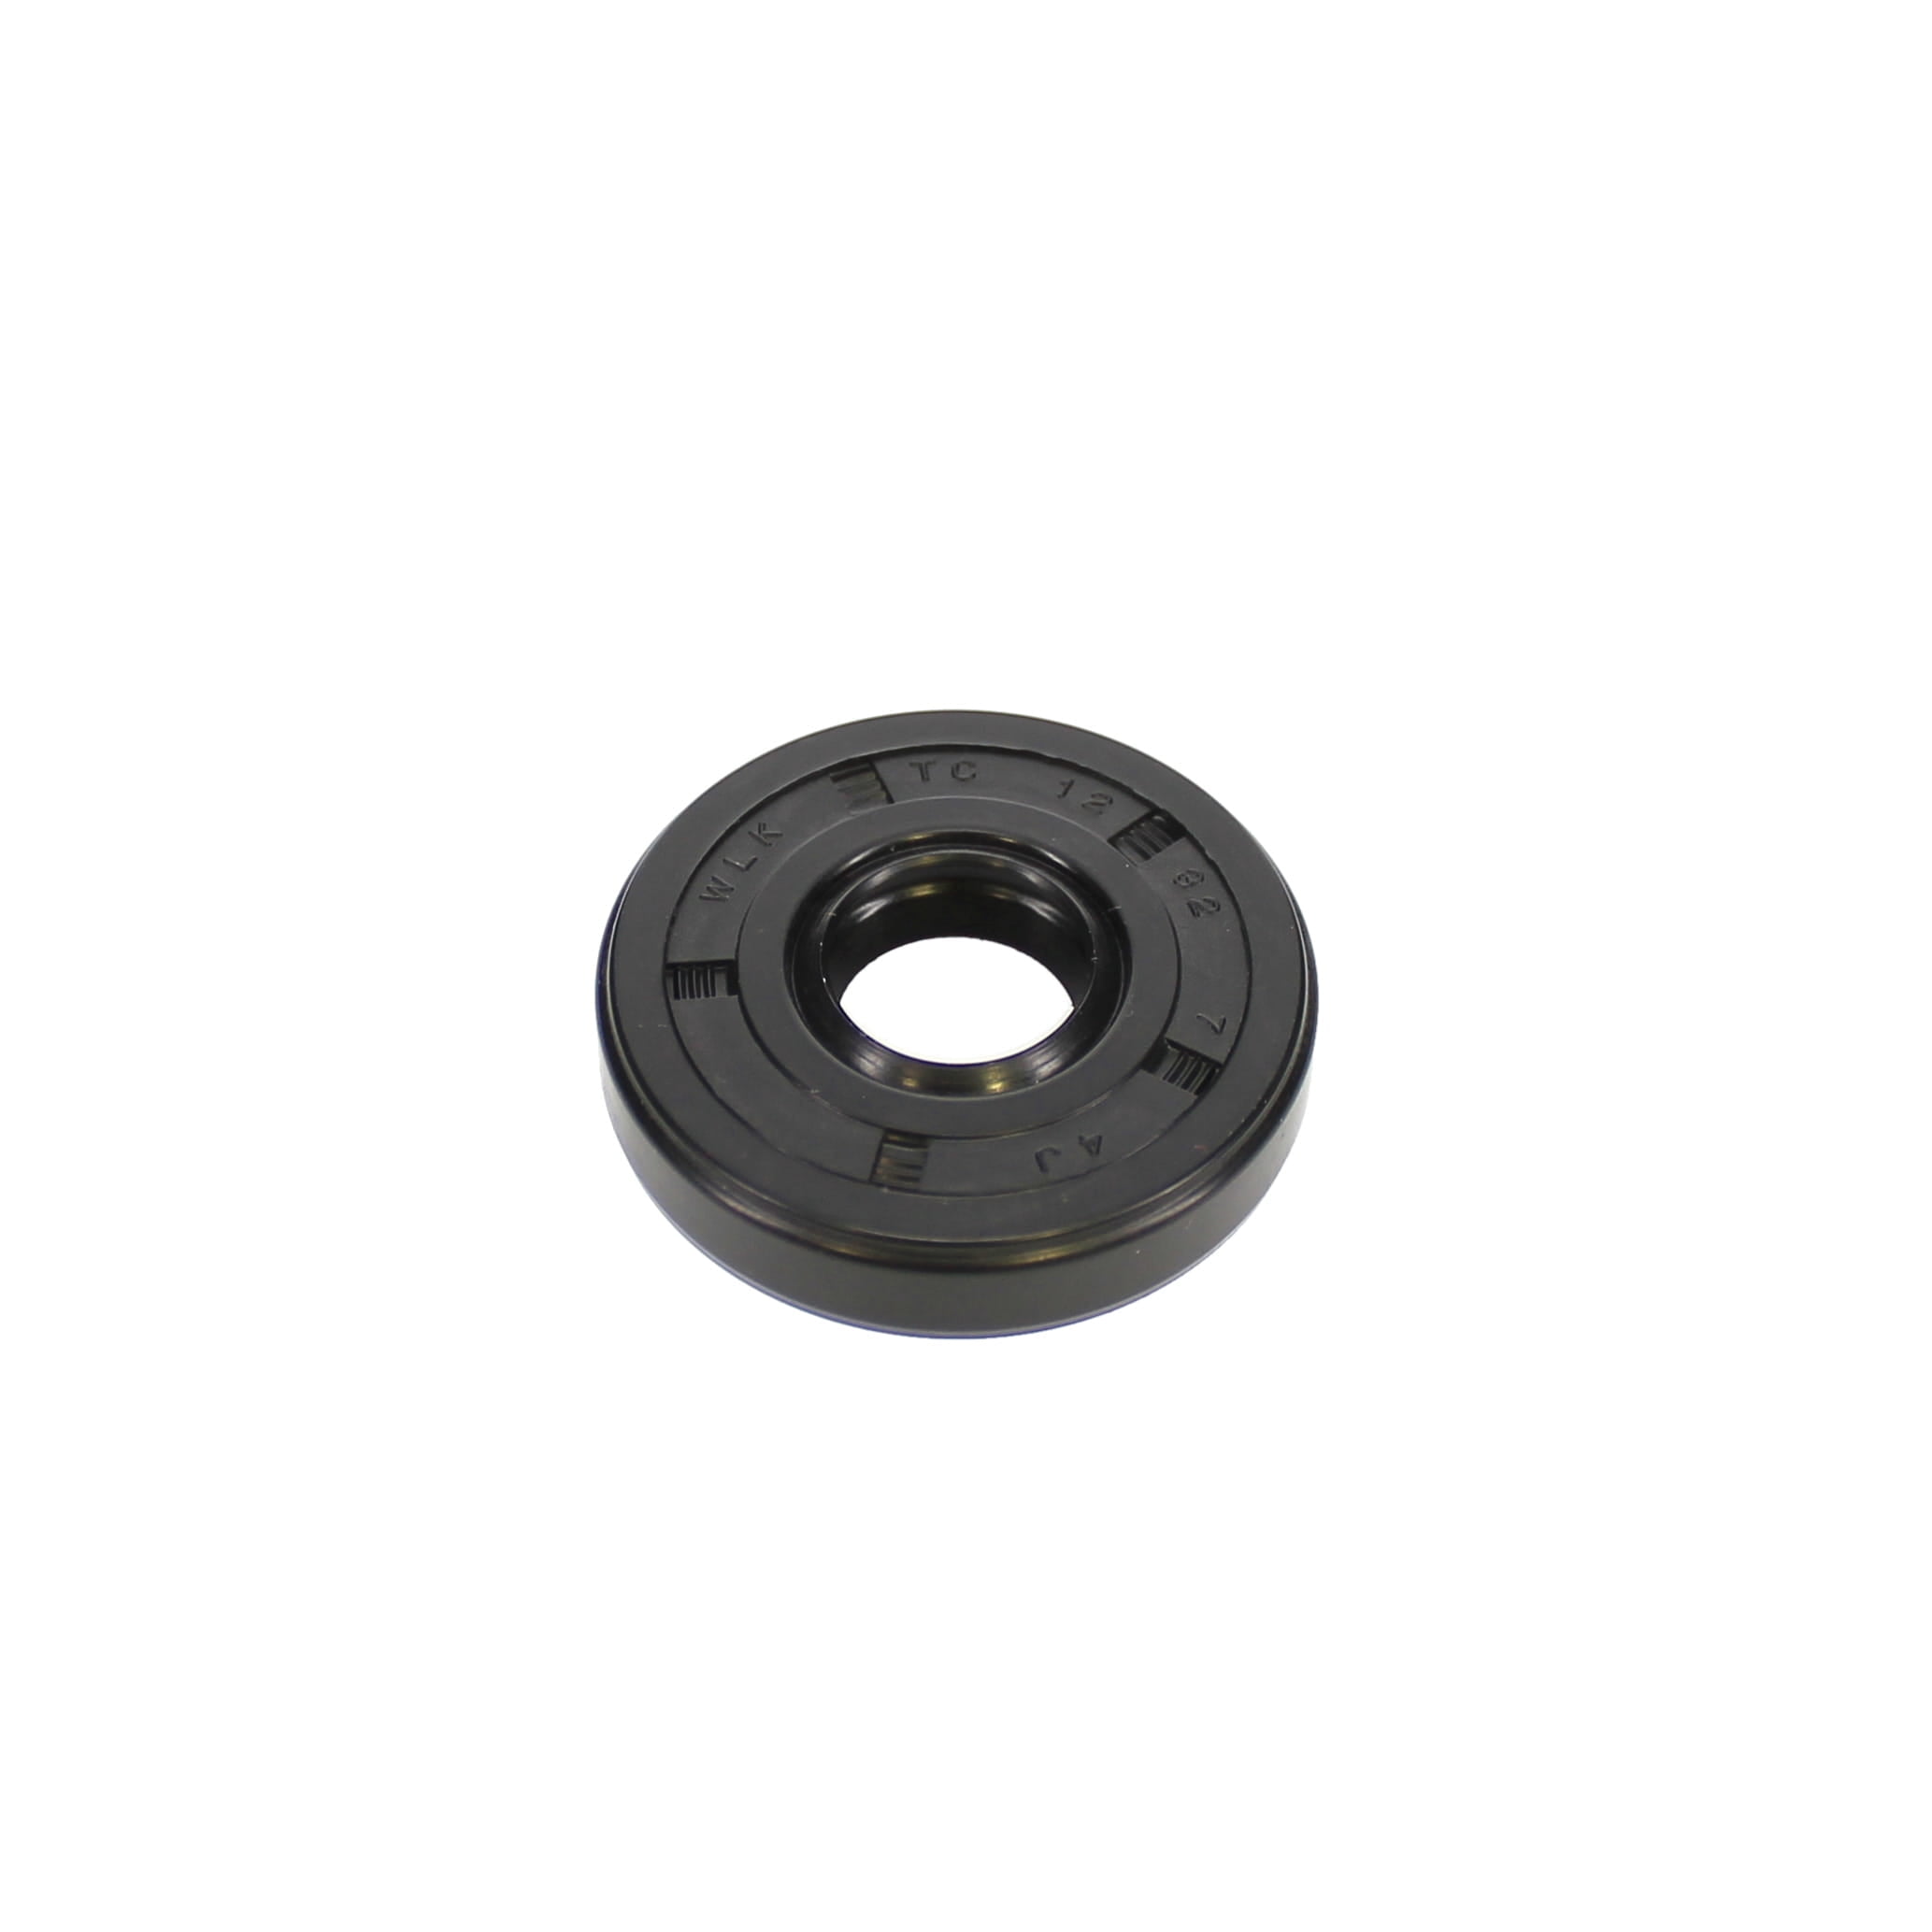 Oil Seal Set de carter cylindre Joints Pour FS160 FS280 FS220 #9640 003 1190